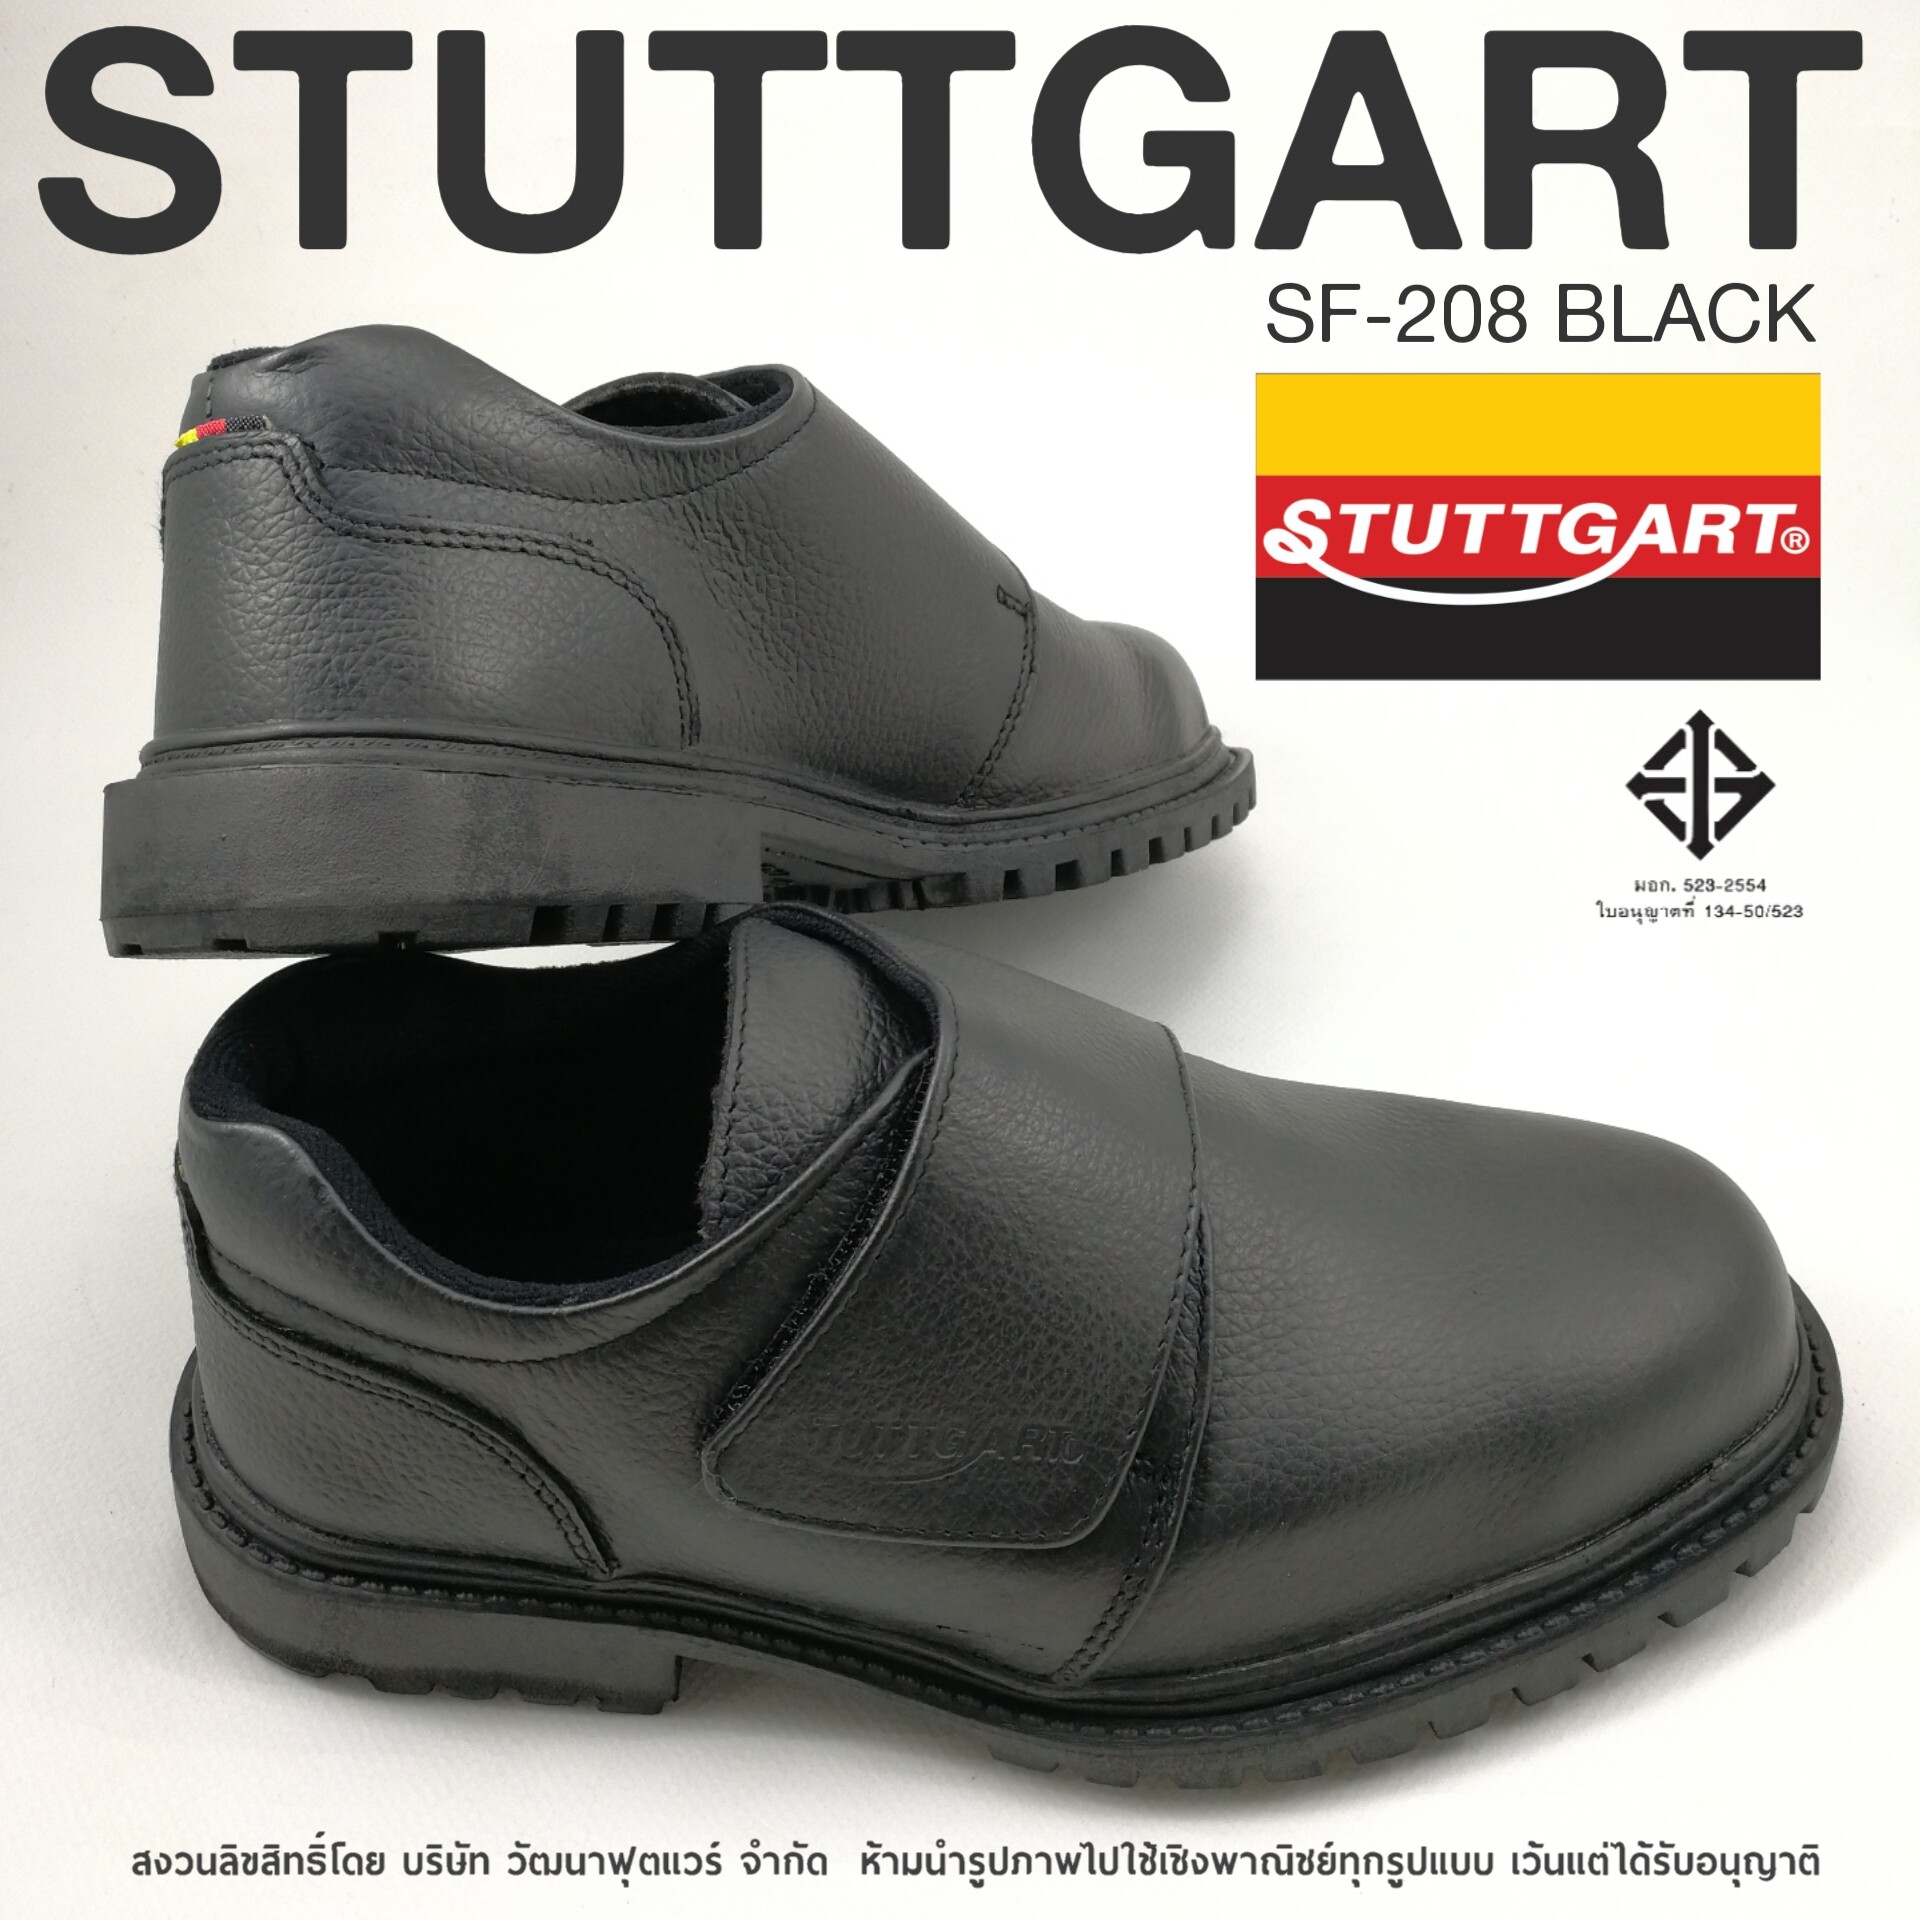 รองเท้าเซฟตี้ STUTTGART SAFETY SF-208 สี ดำ ขนาด US 4 สี ดำขนาด US 4